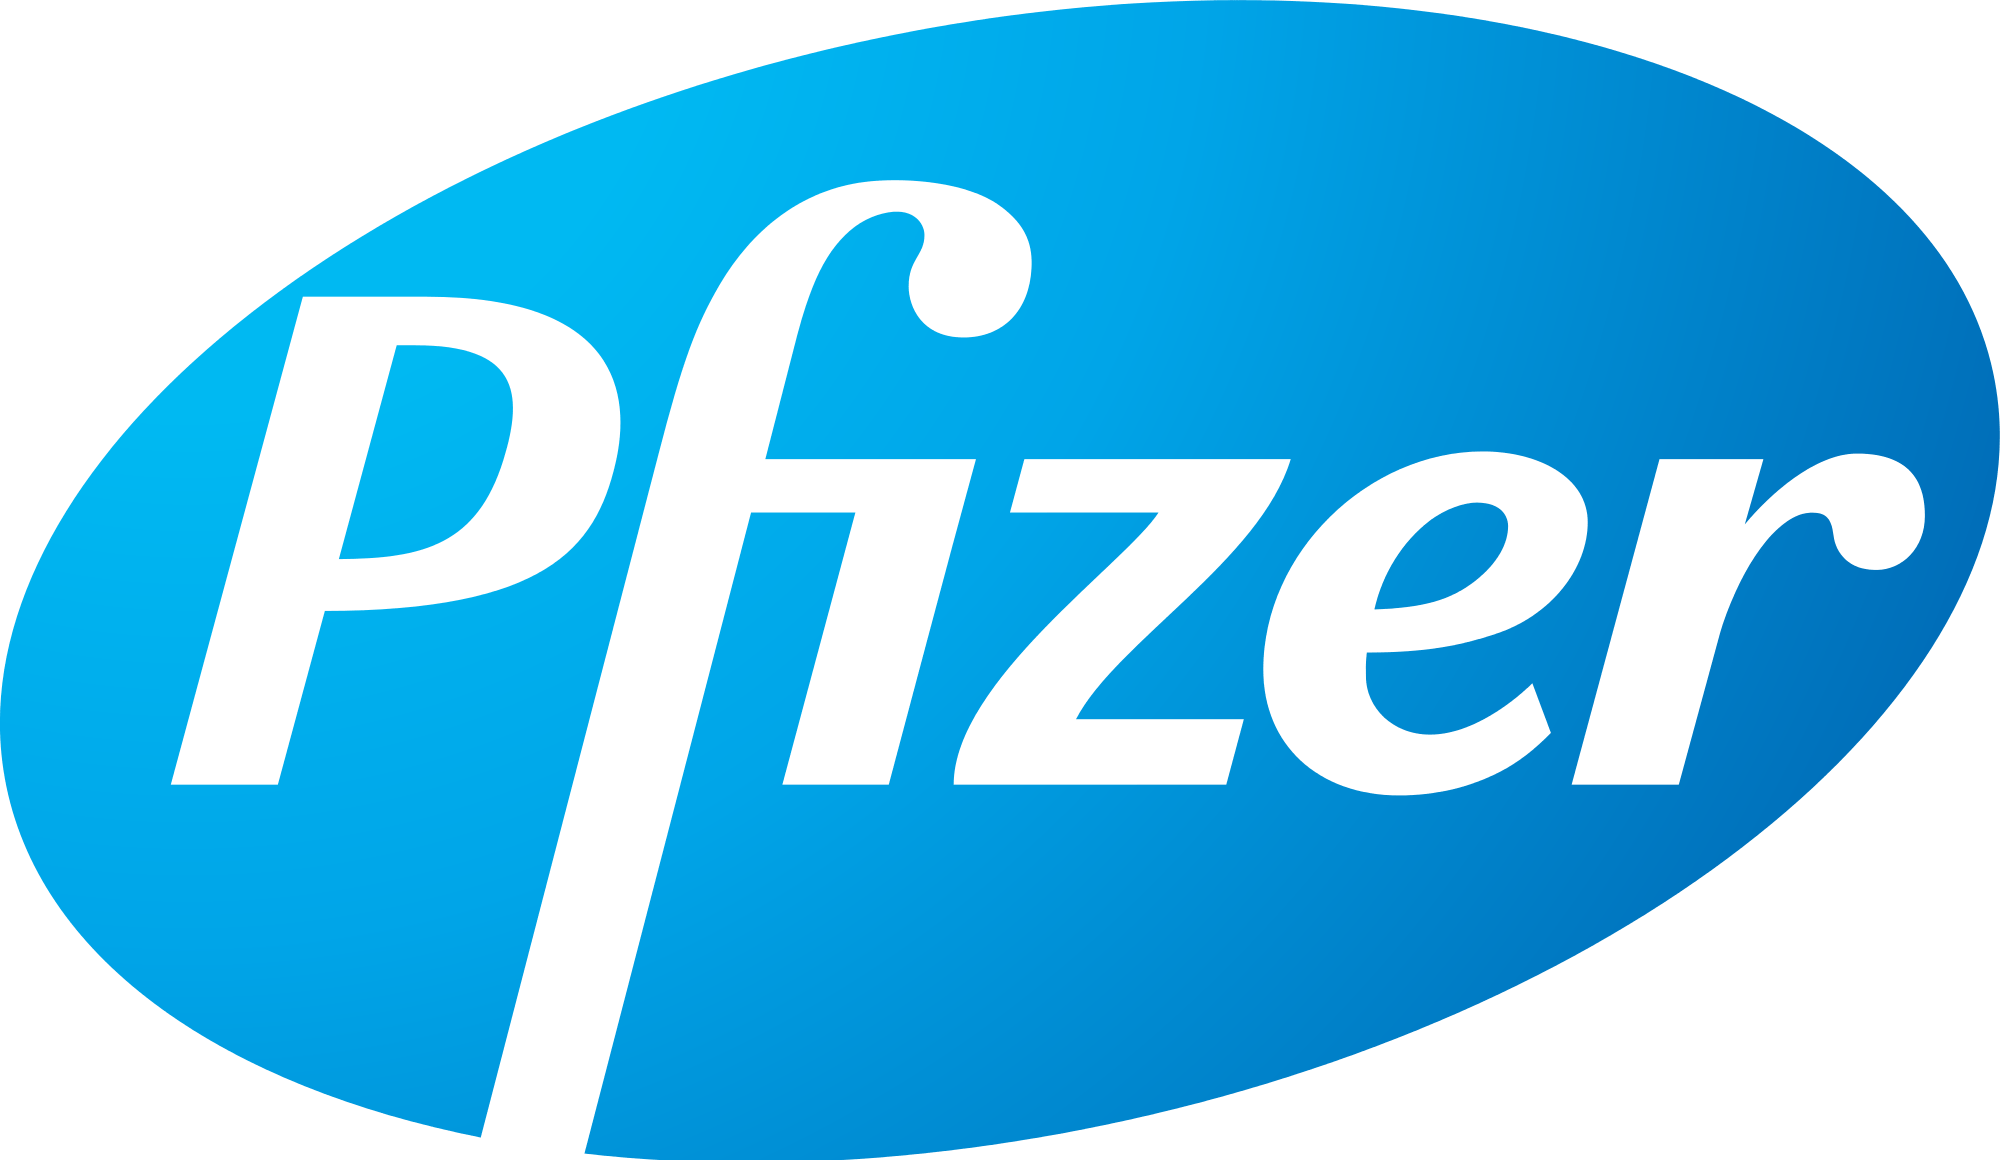 Pfizer Logo - File:Pfizer.svg - Wikimedia Commons